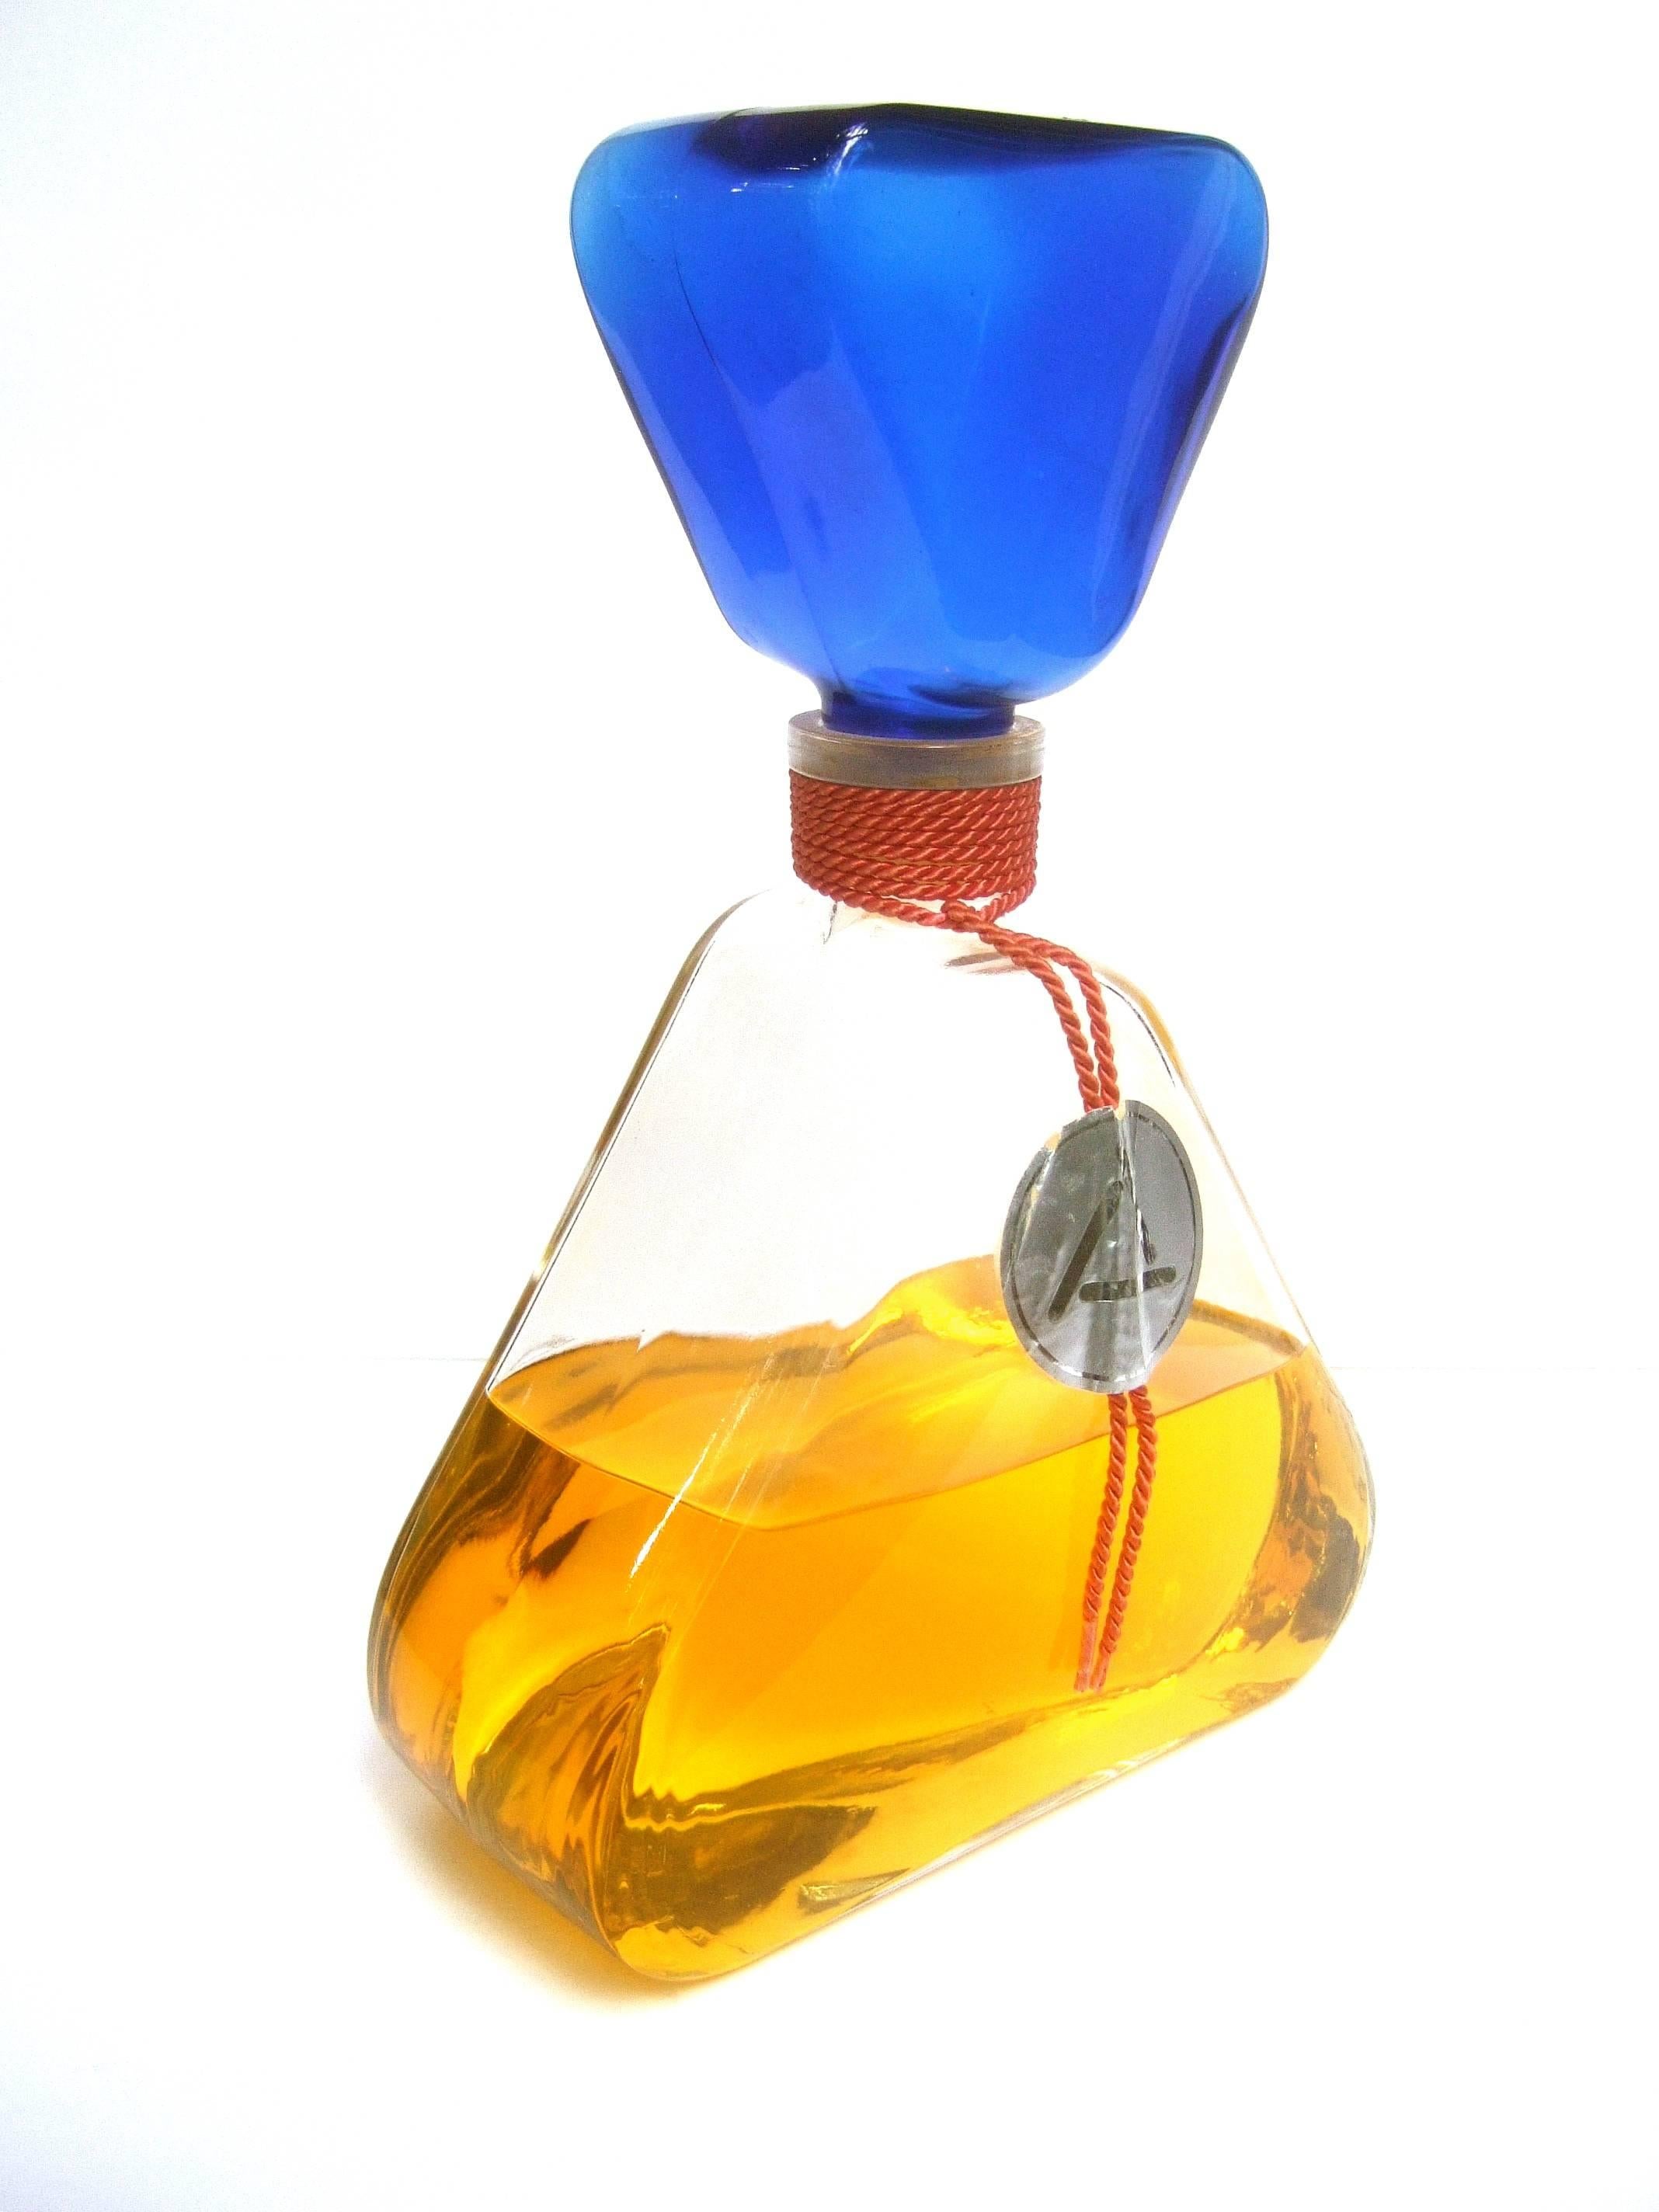 Riesige Glas-Duftfacice-Displayflasche
Die große Duftflaschen-Attrappe 
ist mit gefärbtem Wasser gefüllt

Ausgestellt an den Dufttheken der Abteilungen
 
Ein sehr einzigartiges dekoratives Sammlerstück
auf dem Waschtisch oder Schminktisch